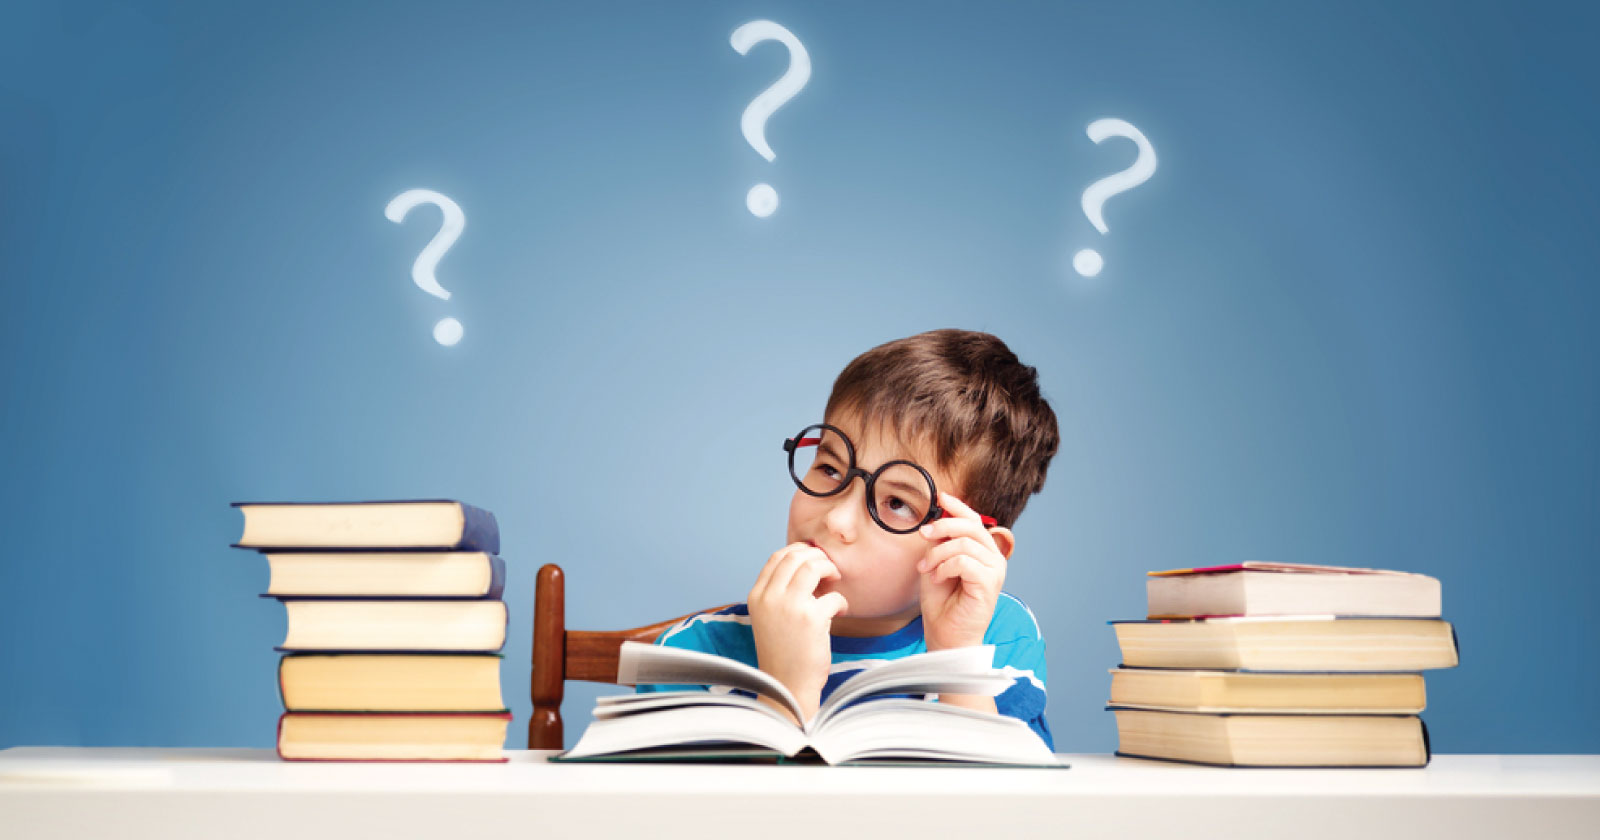 un enfant attablé à un bureau se pose des questions au sujet d'un livre ouvert devant lui. Sur le bureau 2 piles de livre, une à gauche l'autre à droite. En fond, un mur bleu sur lequel sont 3 points d'interrogation